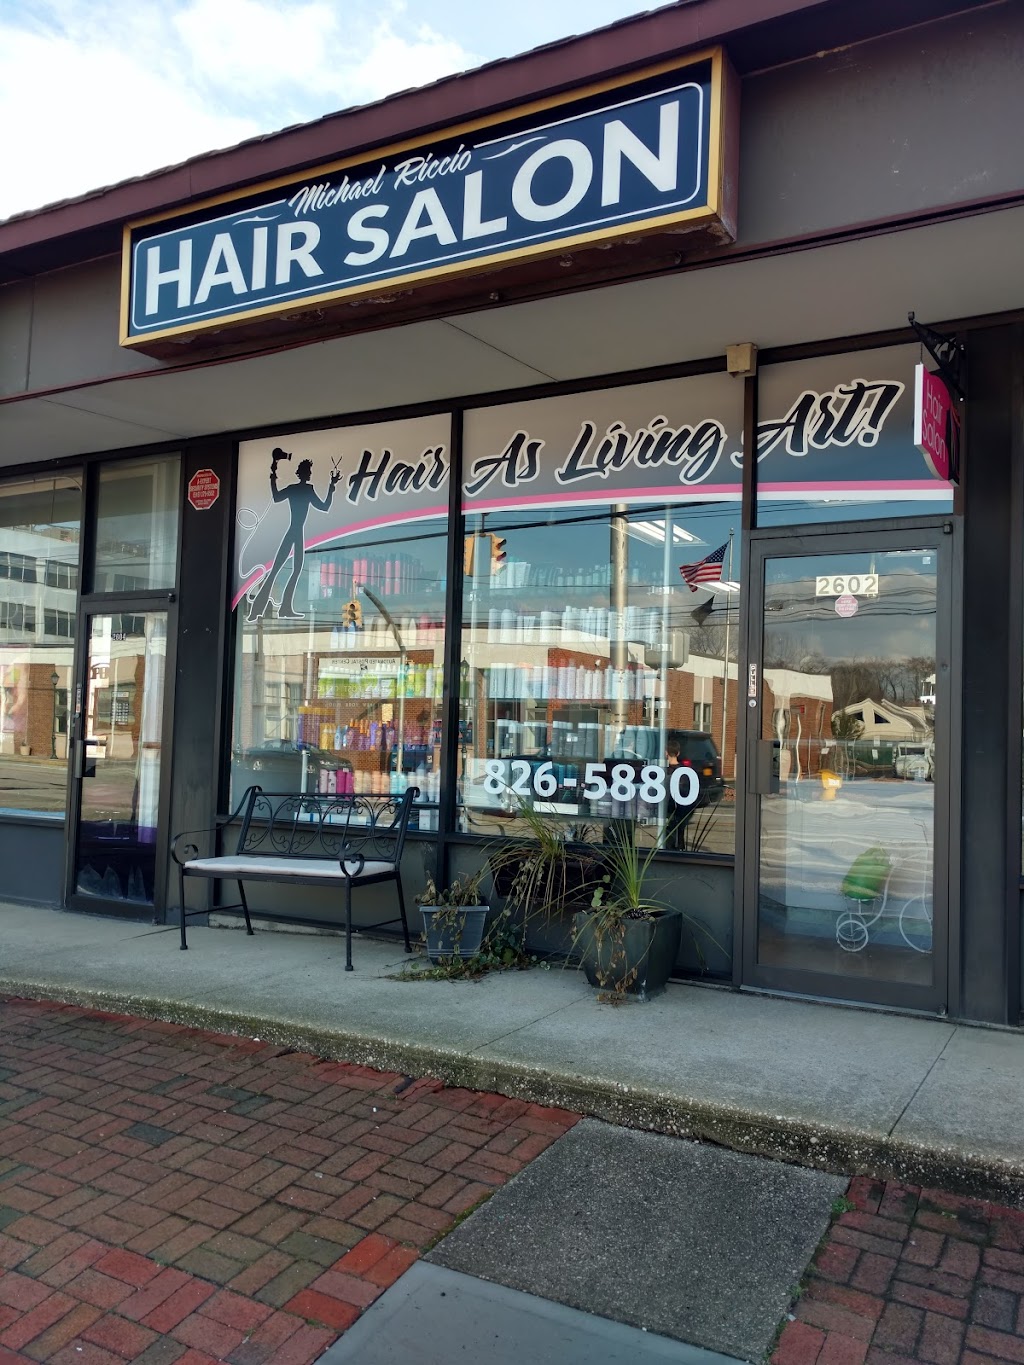 Michael Riccio Hair Salon | 2602 Merrick Rd, Bellmore, NY 11710 | Phone: (516) 826-5880